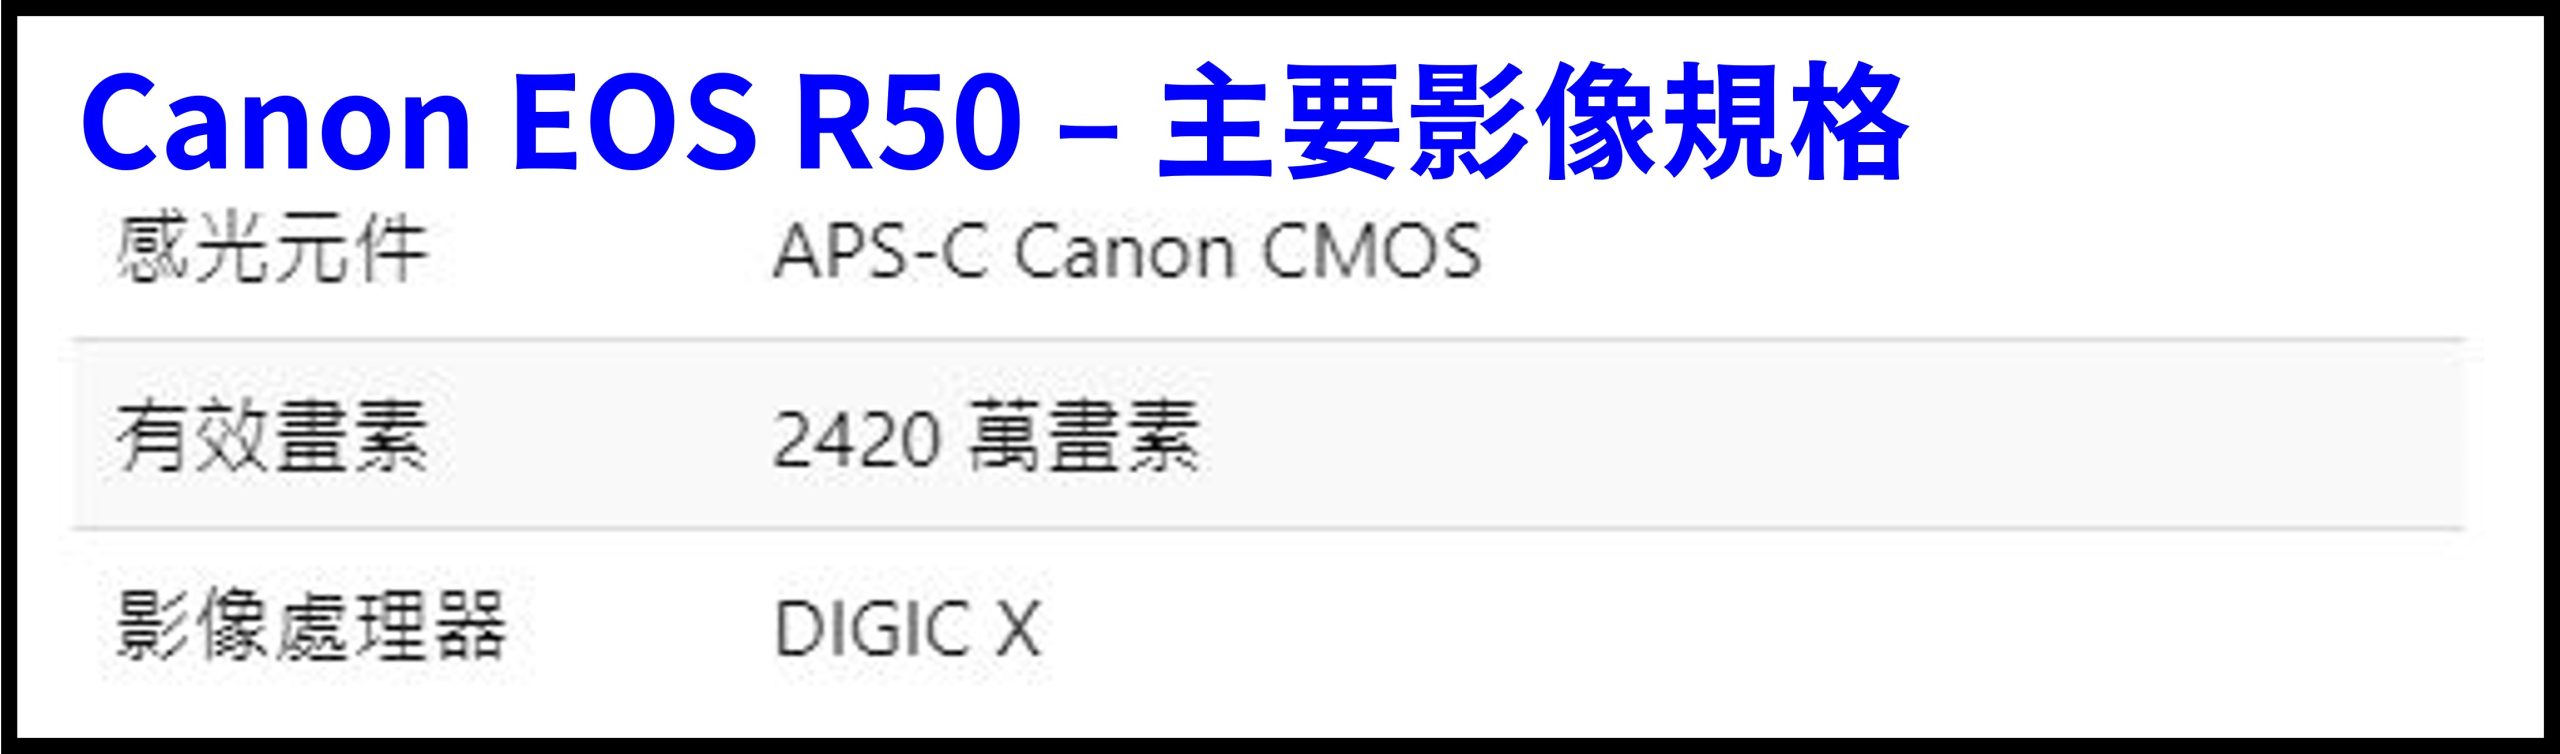 Canon EOS R50 規格